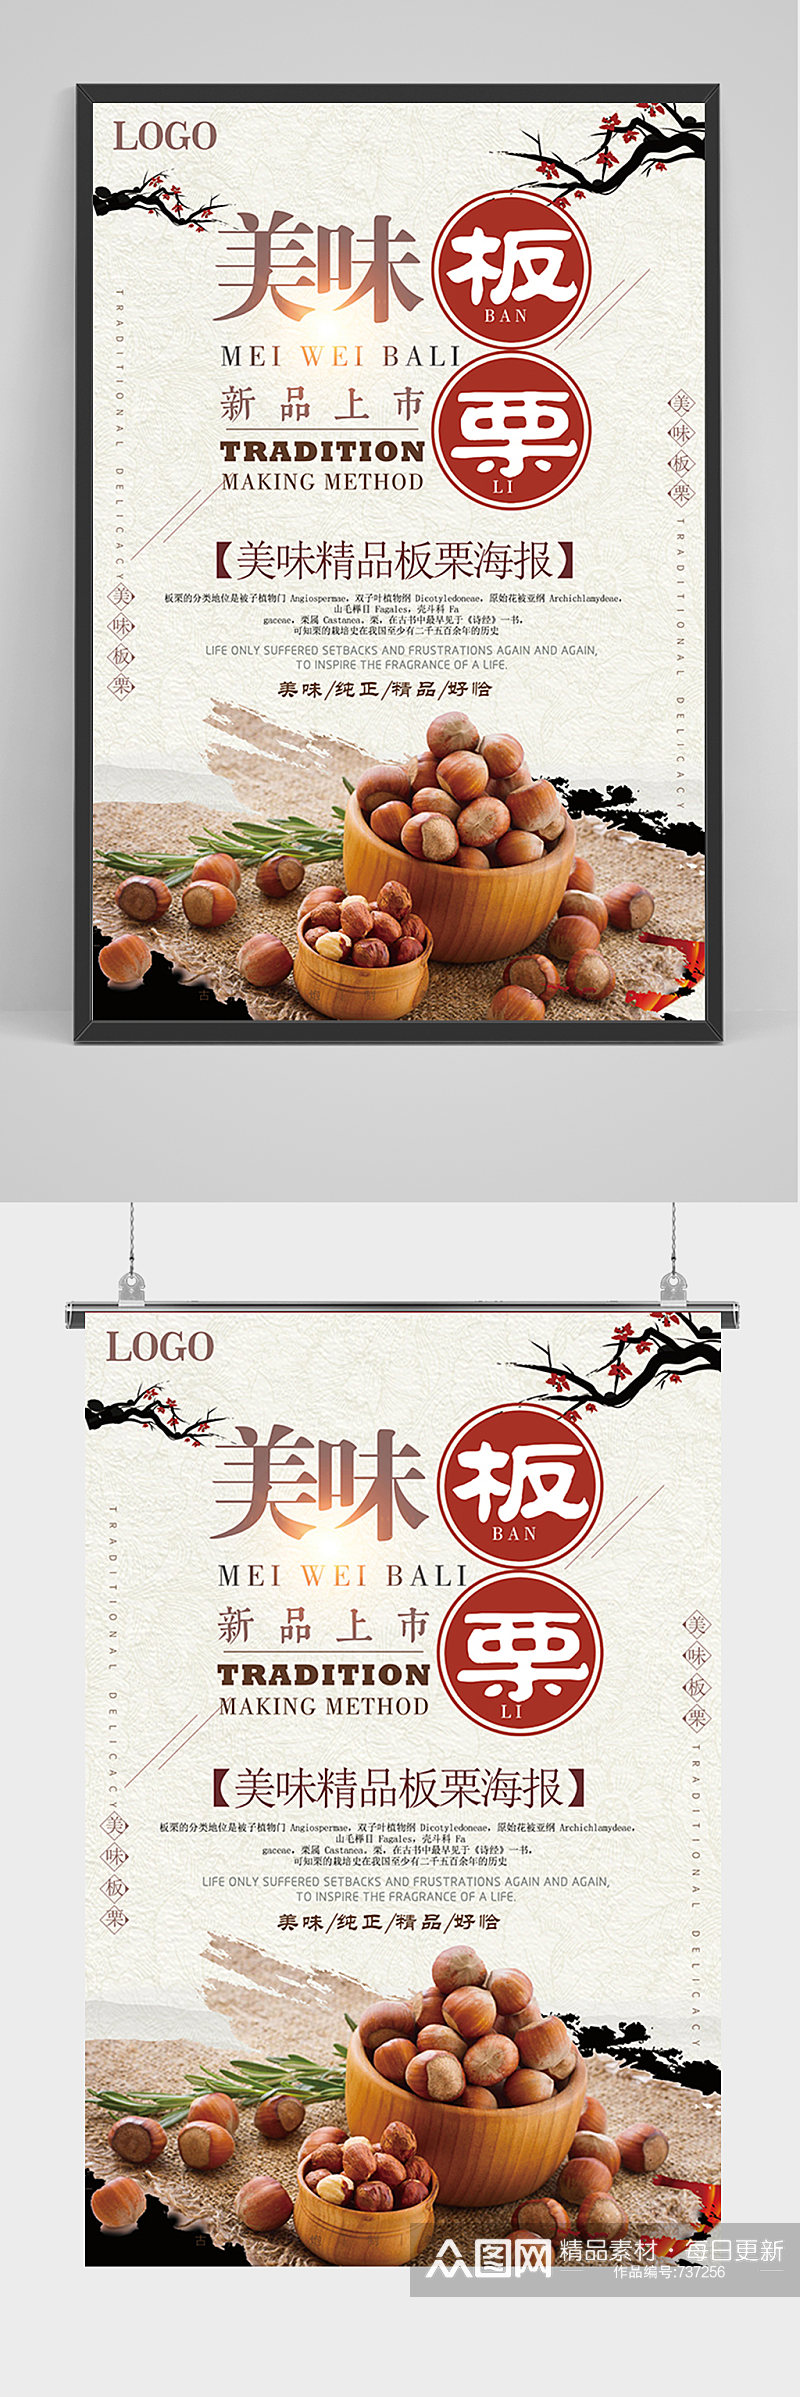 古典中国风板栗宣传海报素材